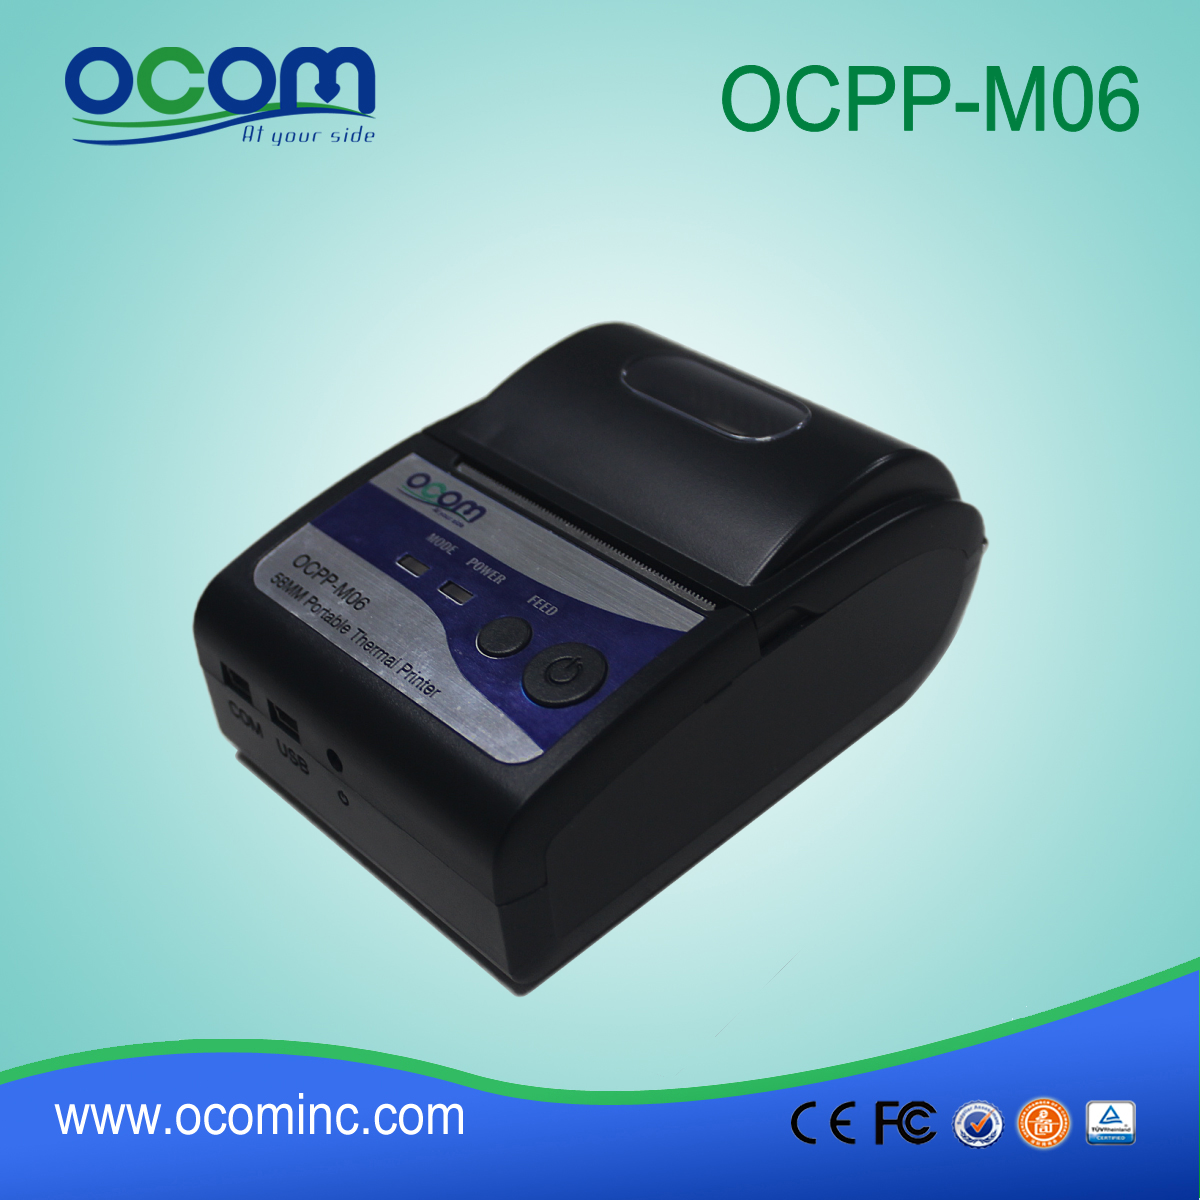 (OCPP-M06) OCOM 2015 Hete verkopende Android handheld printer, draagbare printer te koop